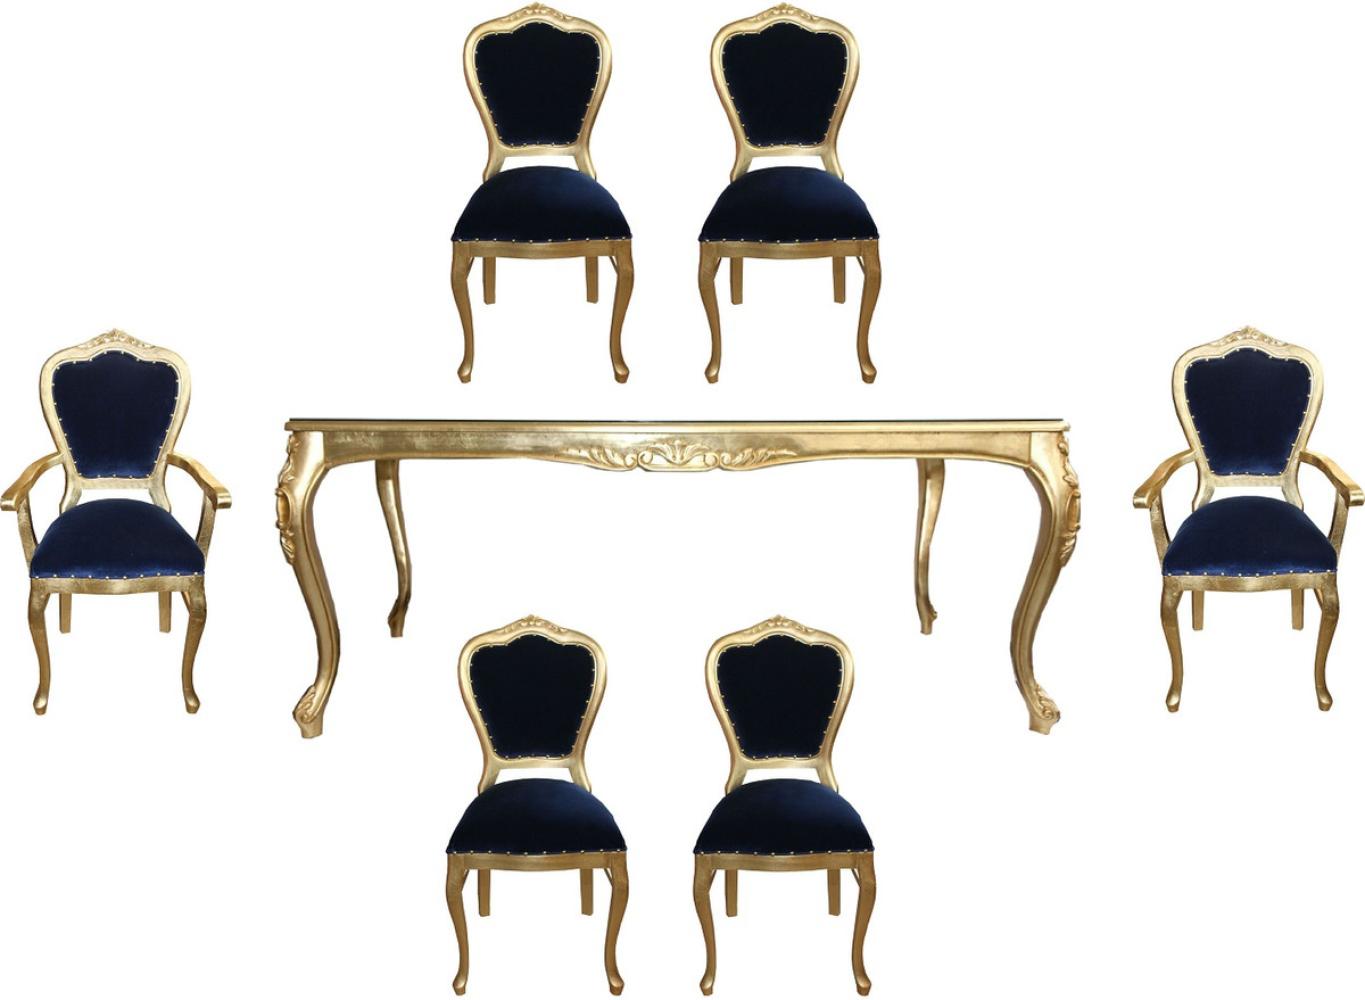 Casa Padrino Luxus Barock Esszimmer Set Royalblau / Gold - 1 Esstisch mit Glasplatte und 6 Stühle - Barock Esszimmermöbel - Made in Italy - Luxury Collection Bild 1